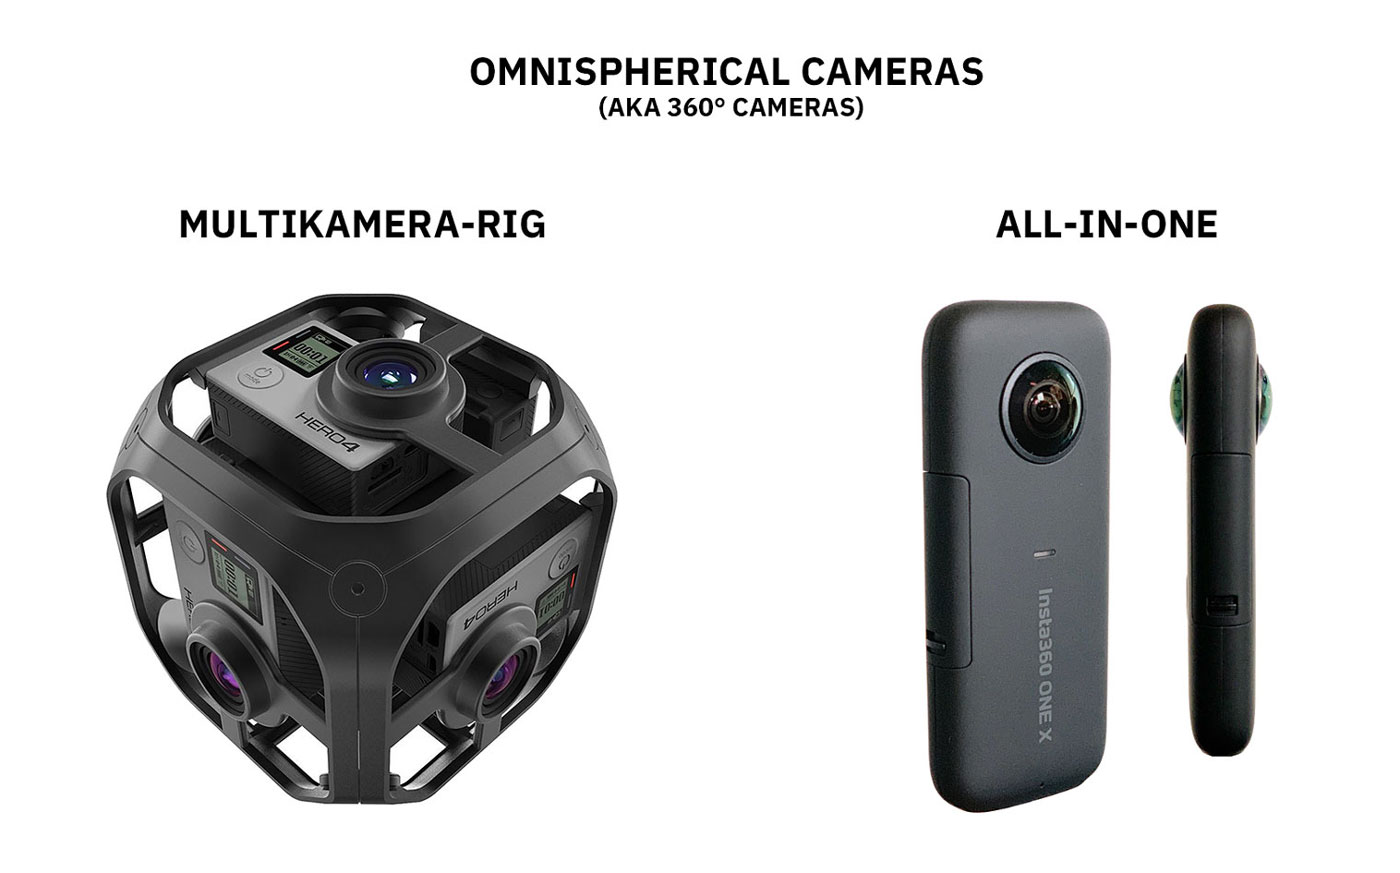 Come realizzare video 360 gradi, fotocamere omni-sferiche